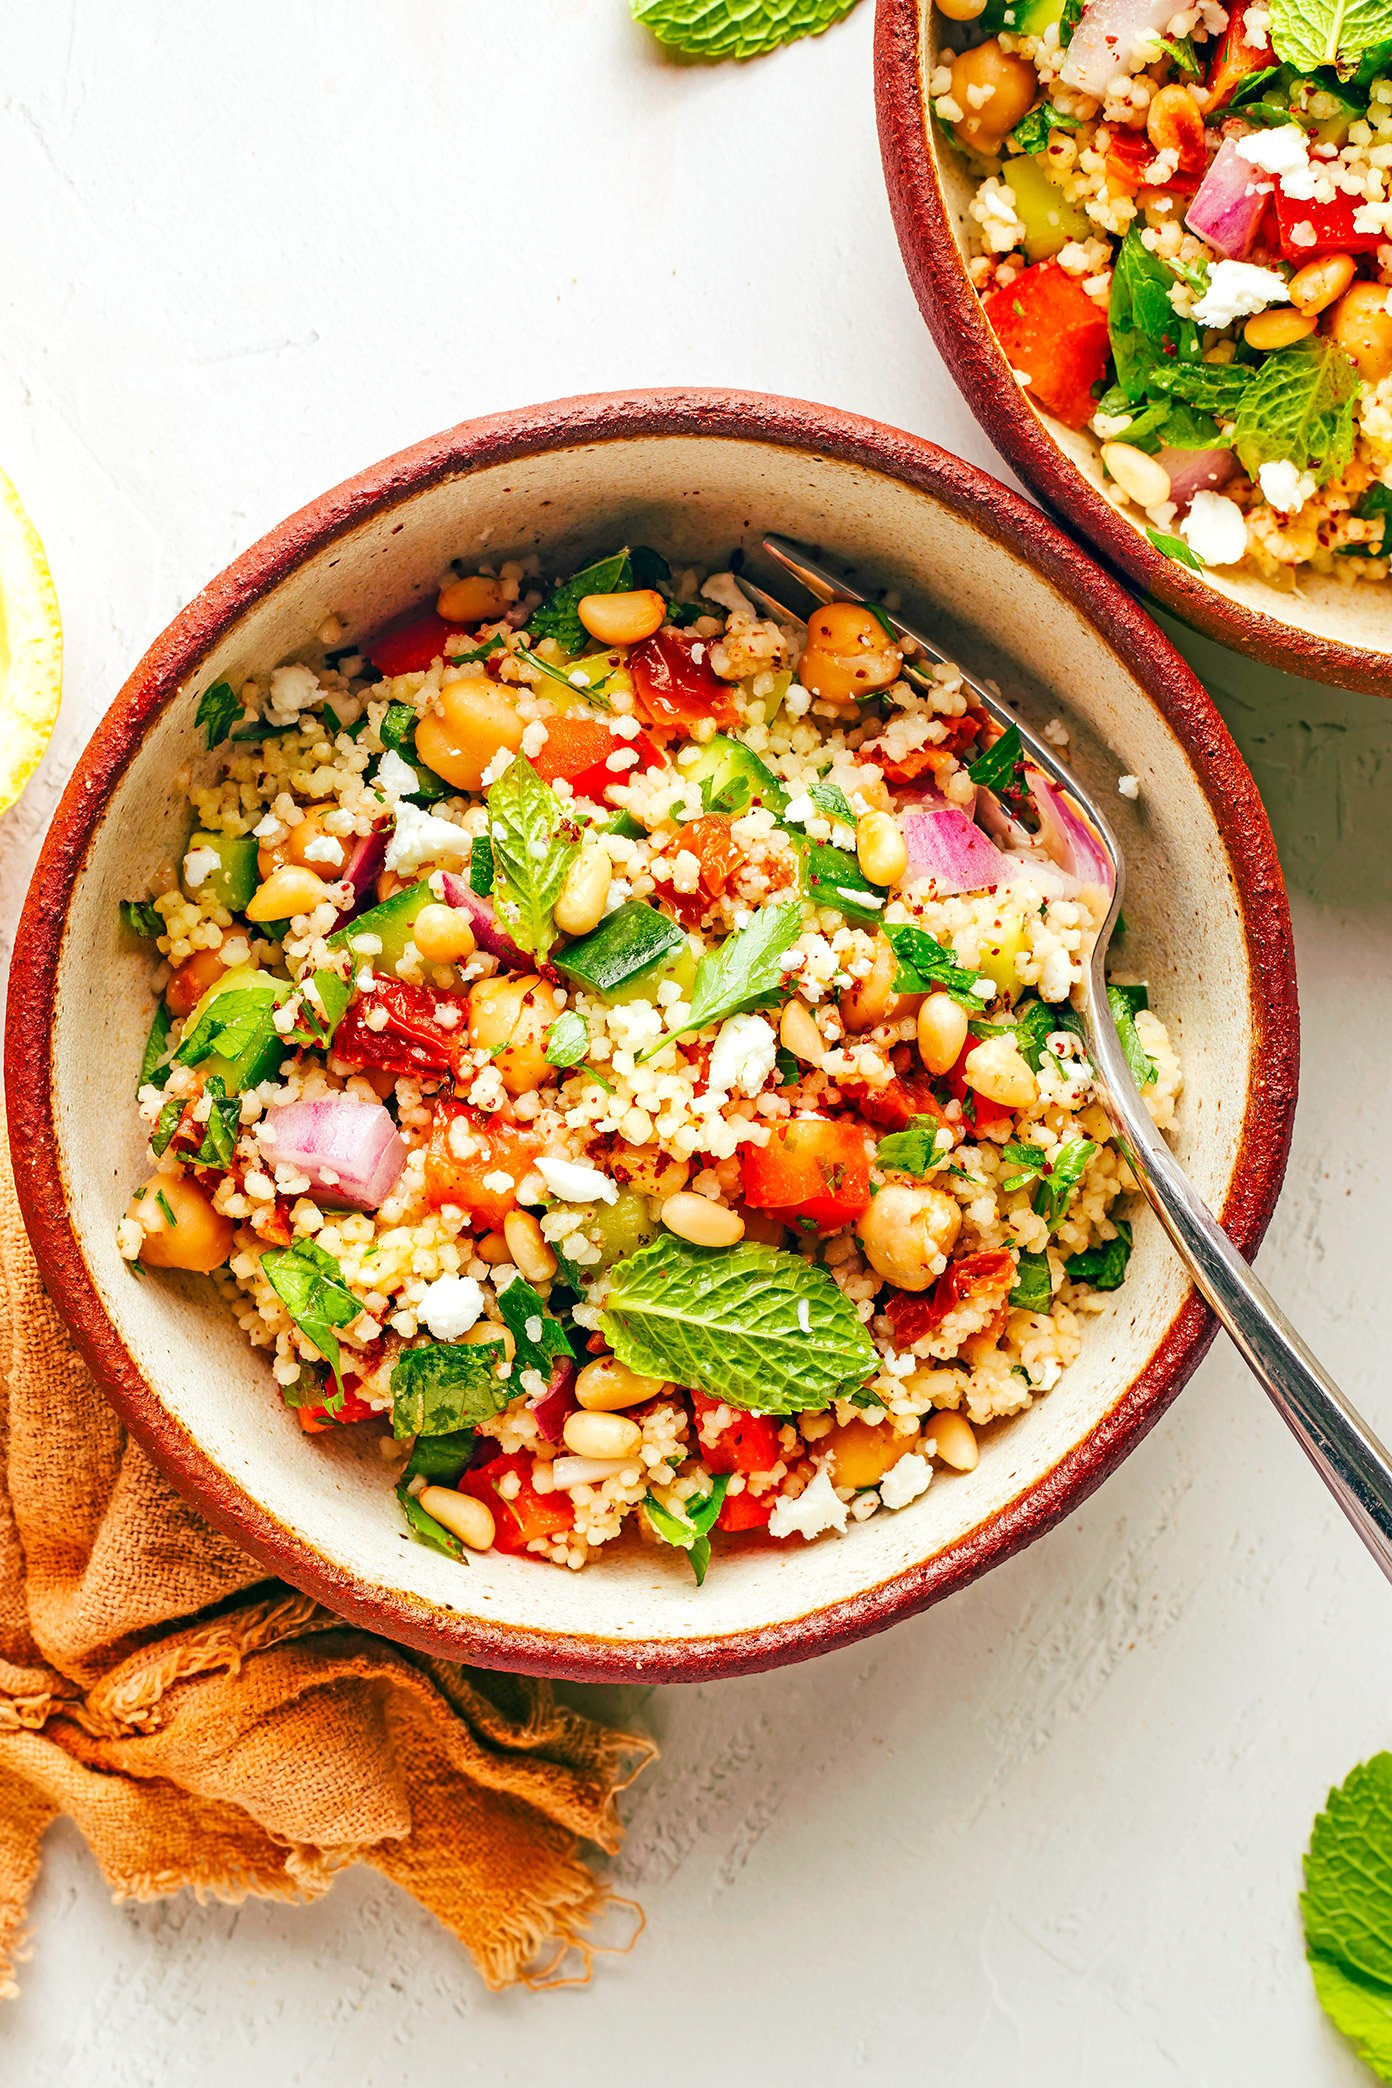 Serve bowls of couscous salad